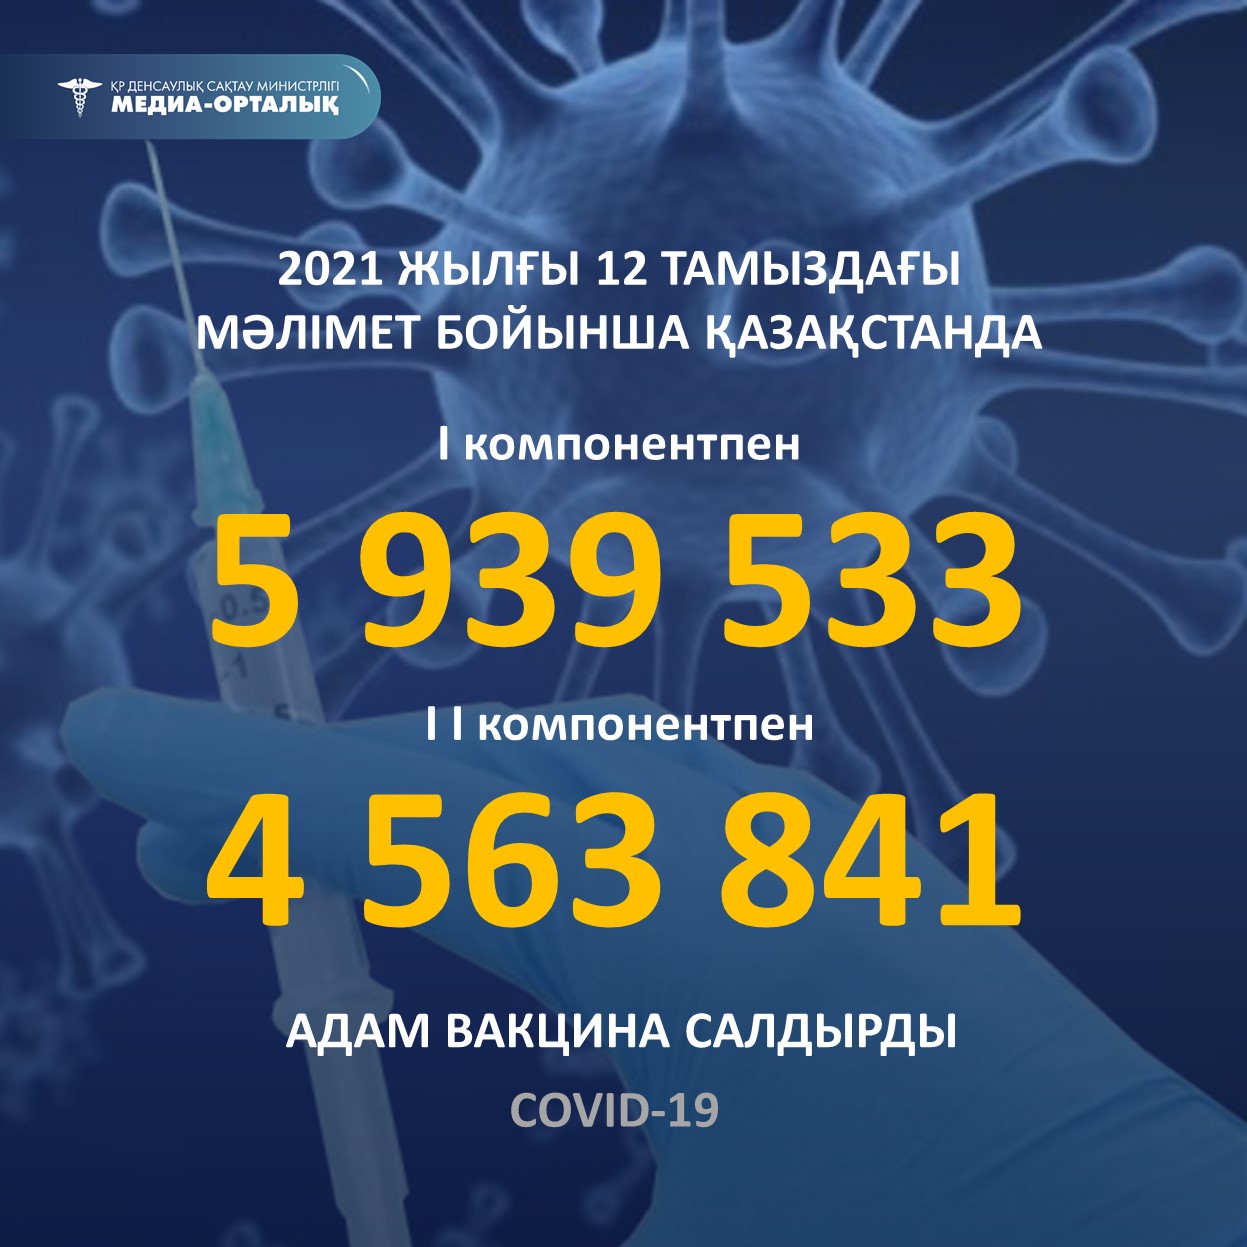 2021 жылғы 12 тамыздағы мәлімет бойынша Қазақстанда I компонентпен 5 939 533 адам вакцина салдырды, II компонентпен 4 563 841 адам.